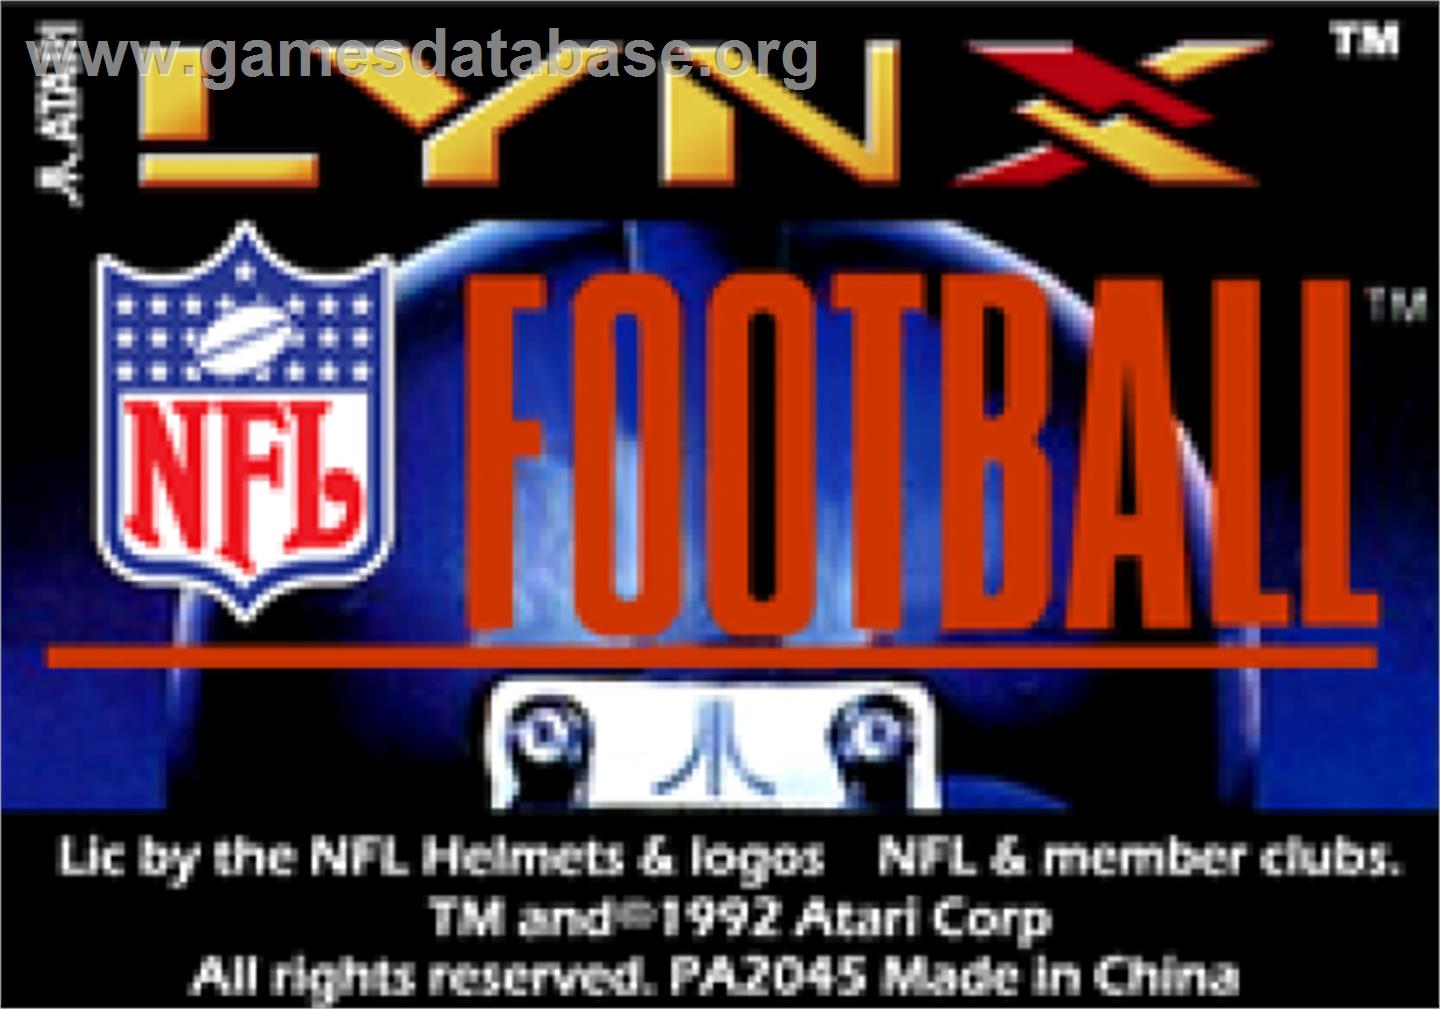 NFL Football - Atari Lynx - Artwork - Cartridge Top